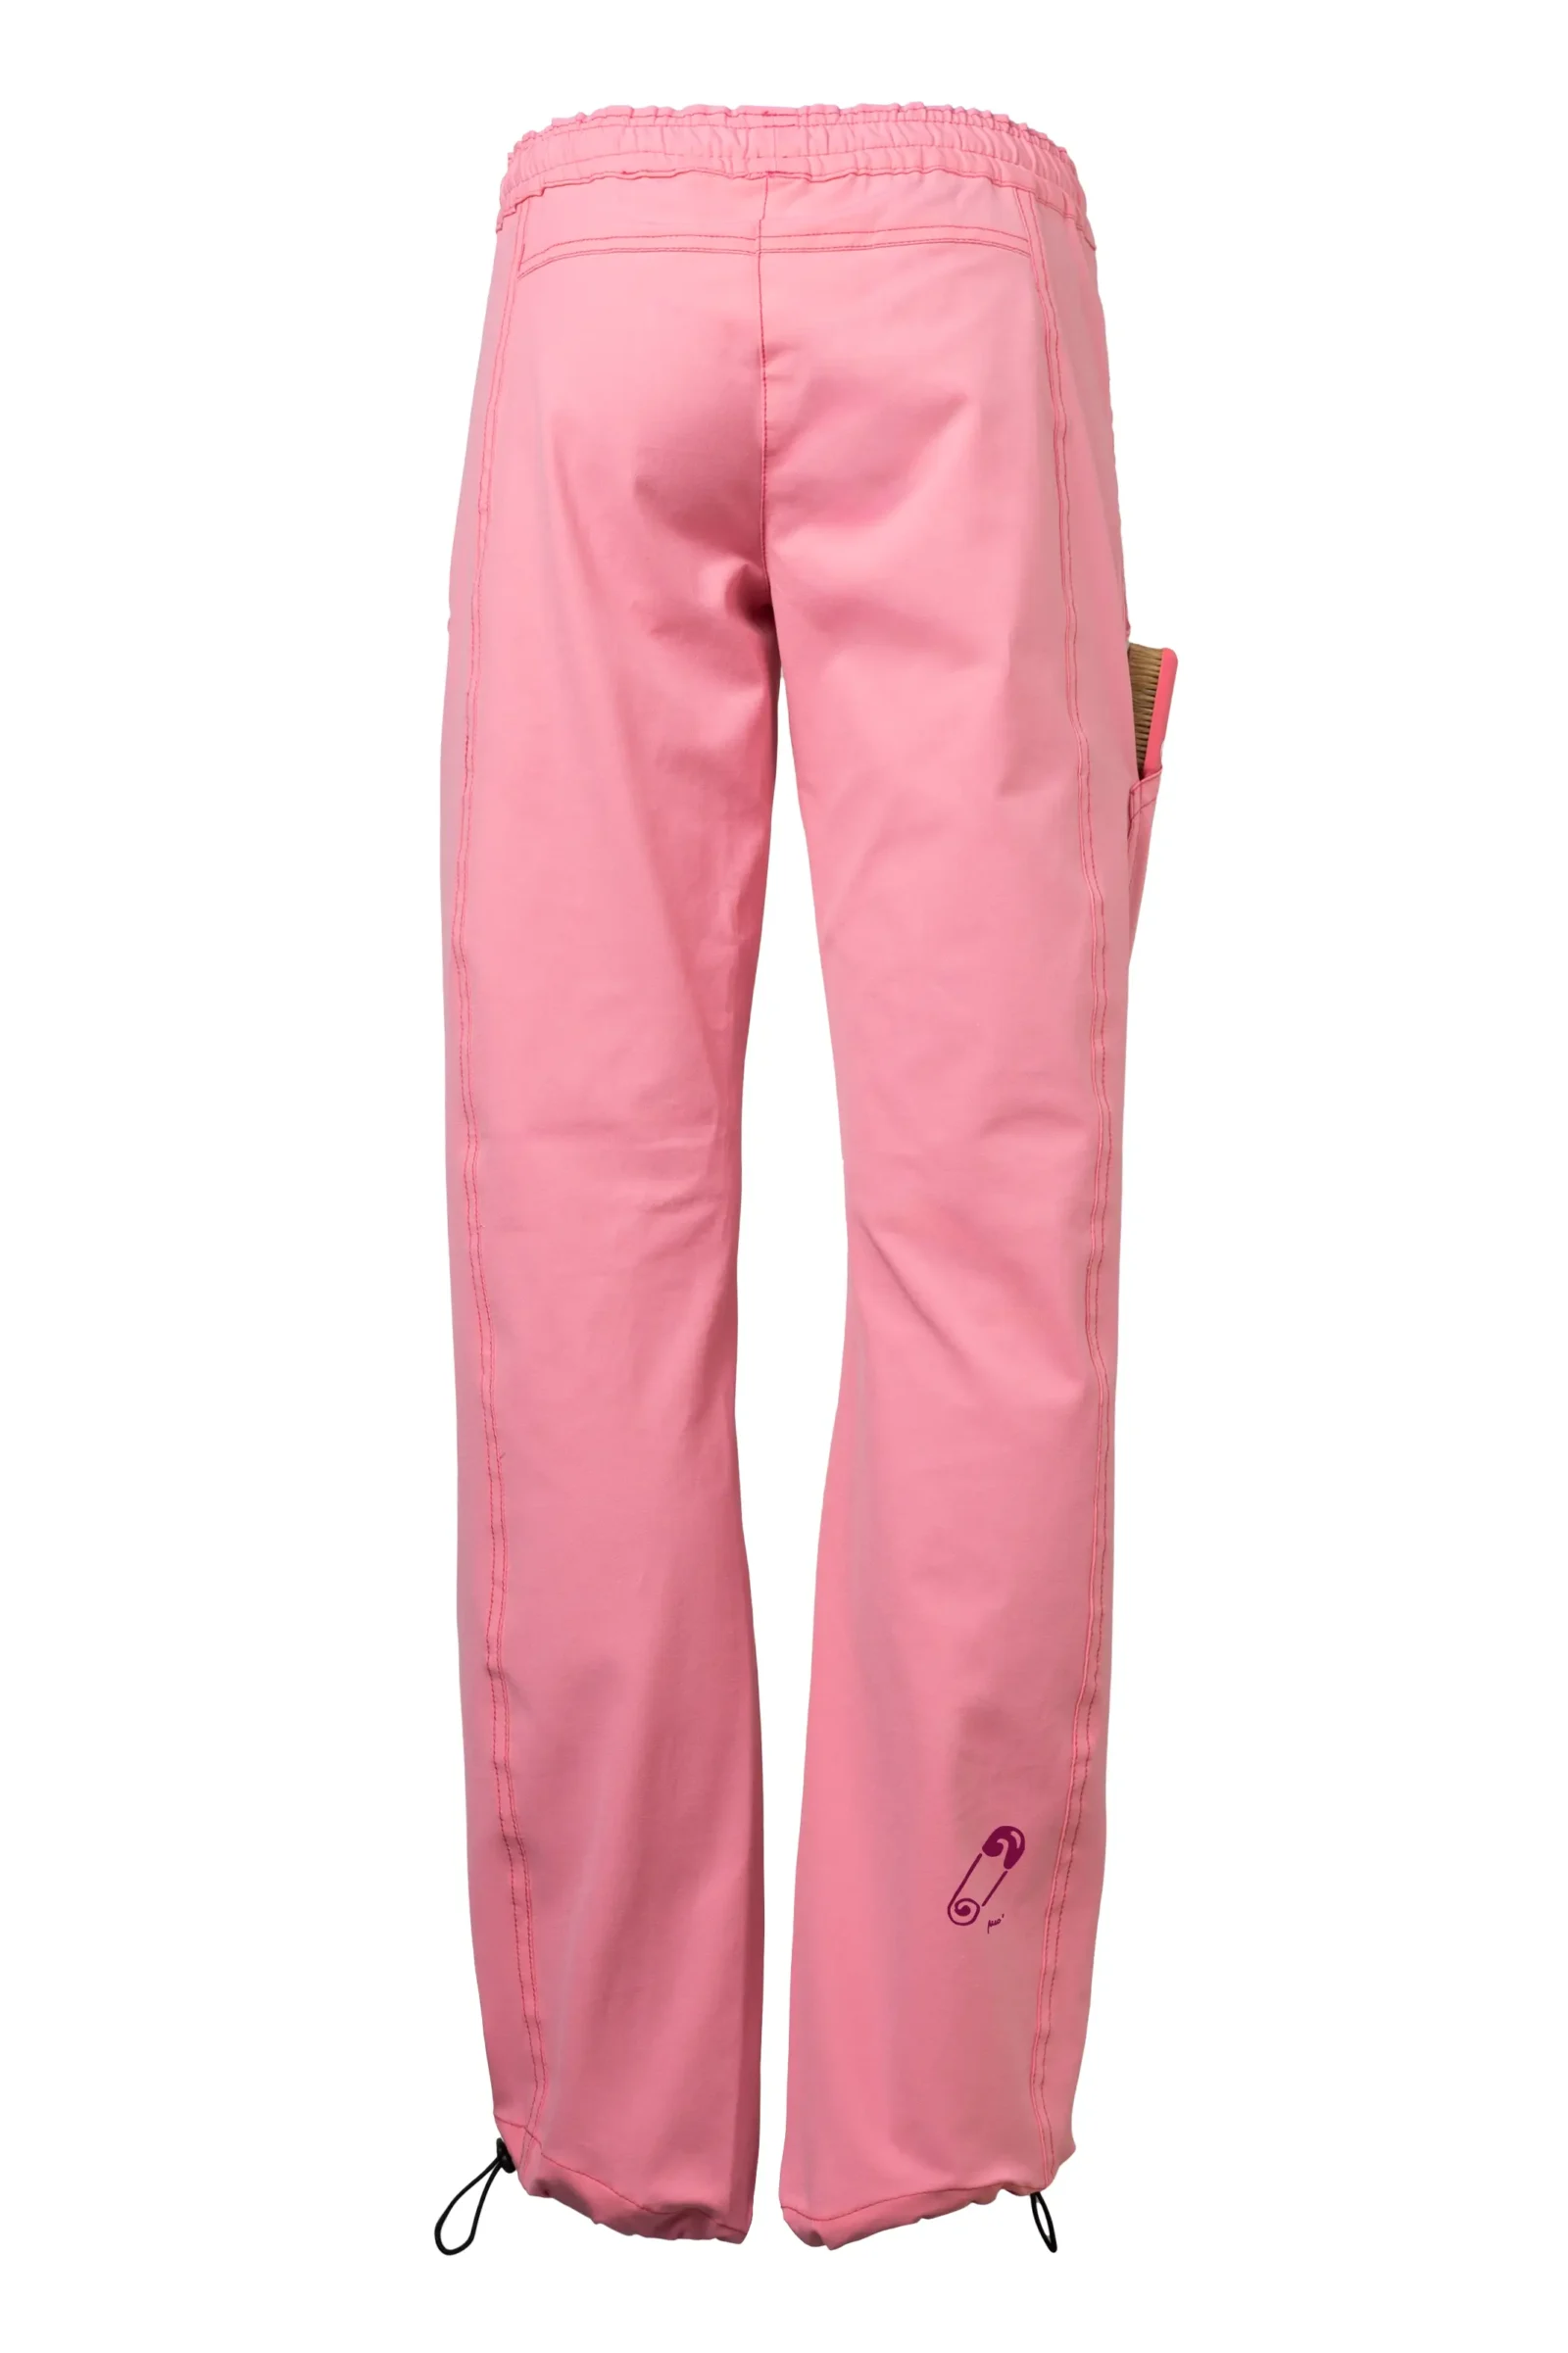 pantalone arrampicata sportiva donna - rosa fluo - cotone elasticizzato - grafica pin - VIOLET MONVIC